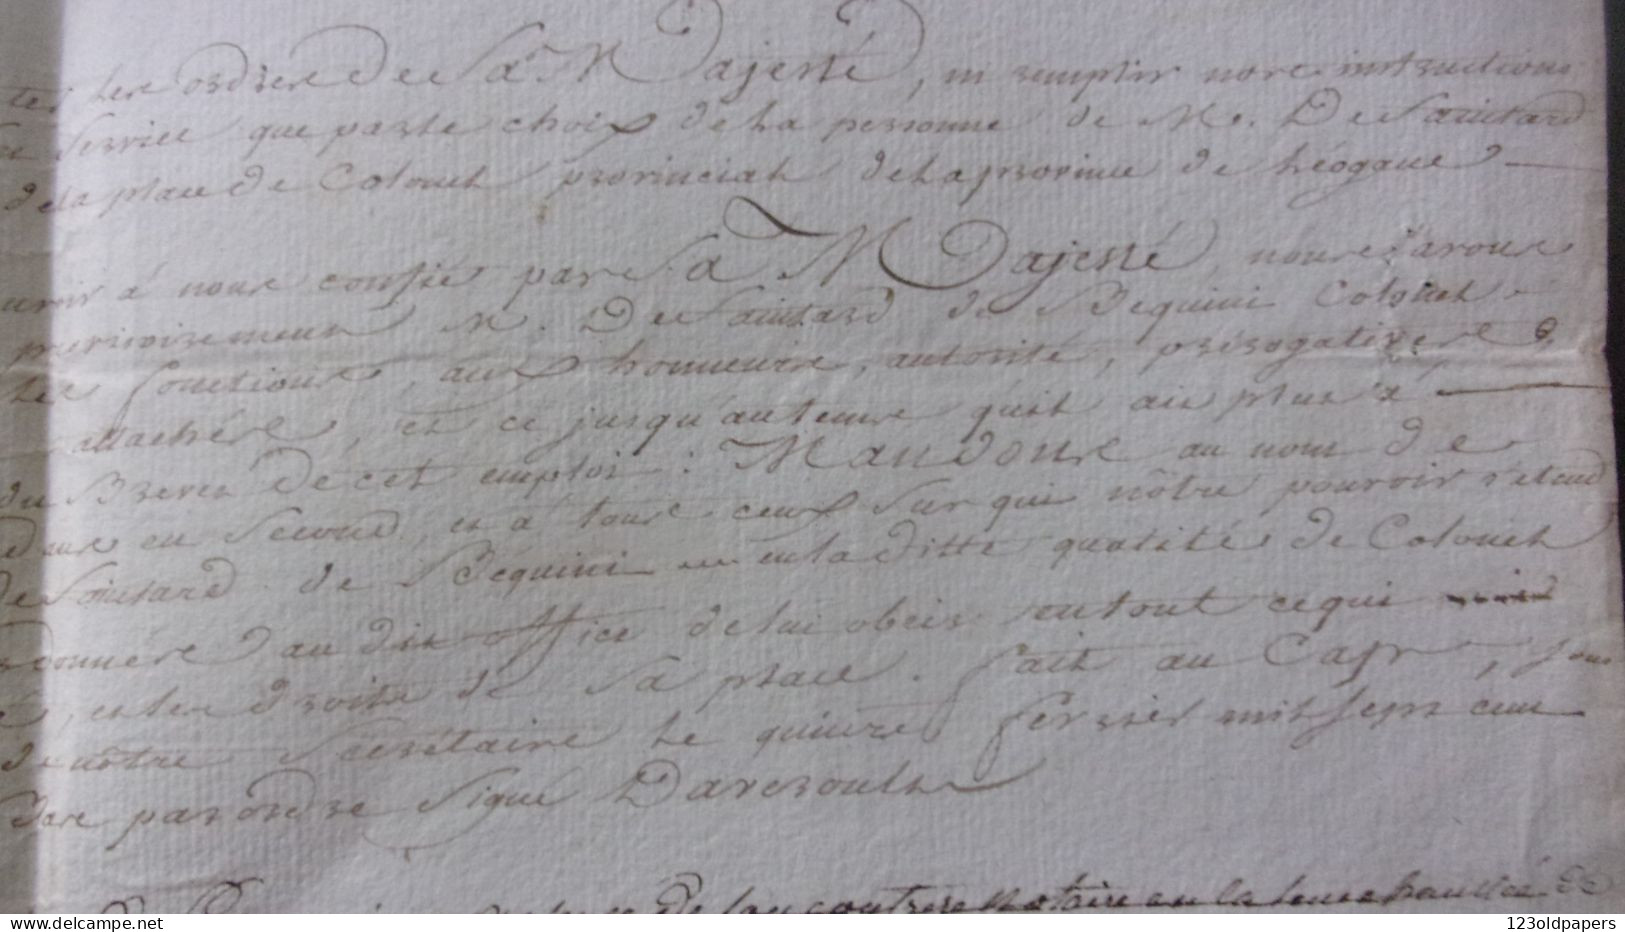 1765 HAITI LEOGANE BEQUINI / LIEUTENANT GENERAL DES ARMEES  COMTE ESTAING PORT AU PRINCE NOMINATION COLONEL PROVINCIAL D